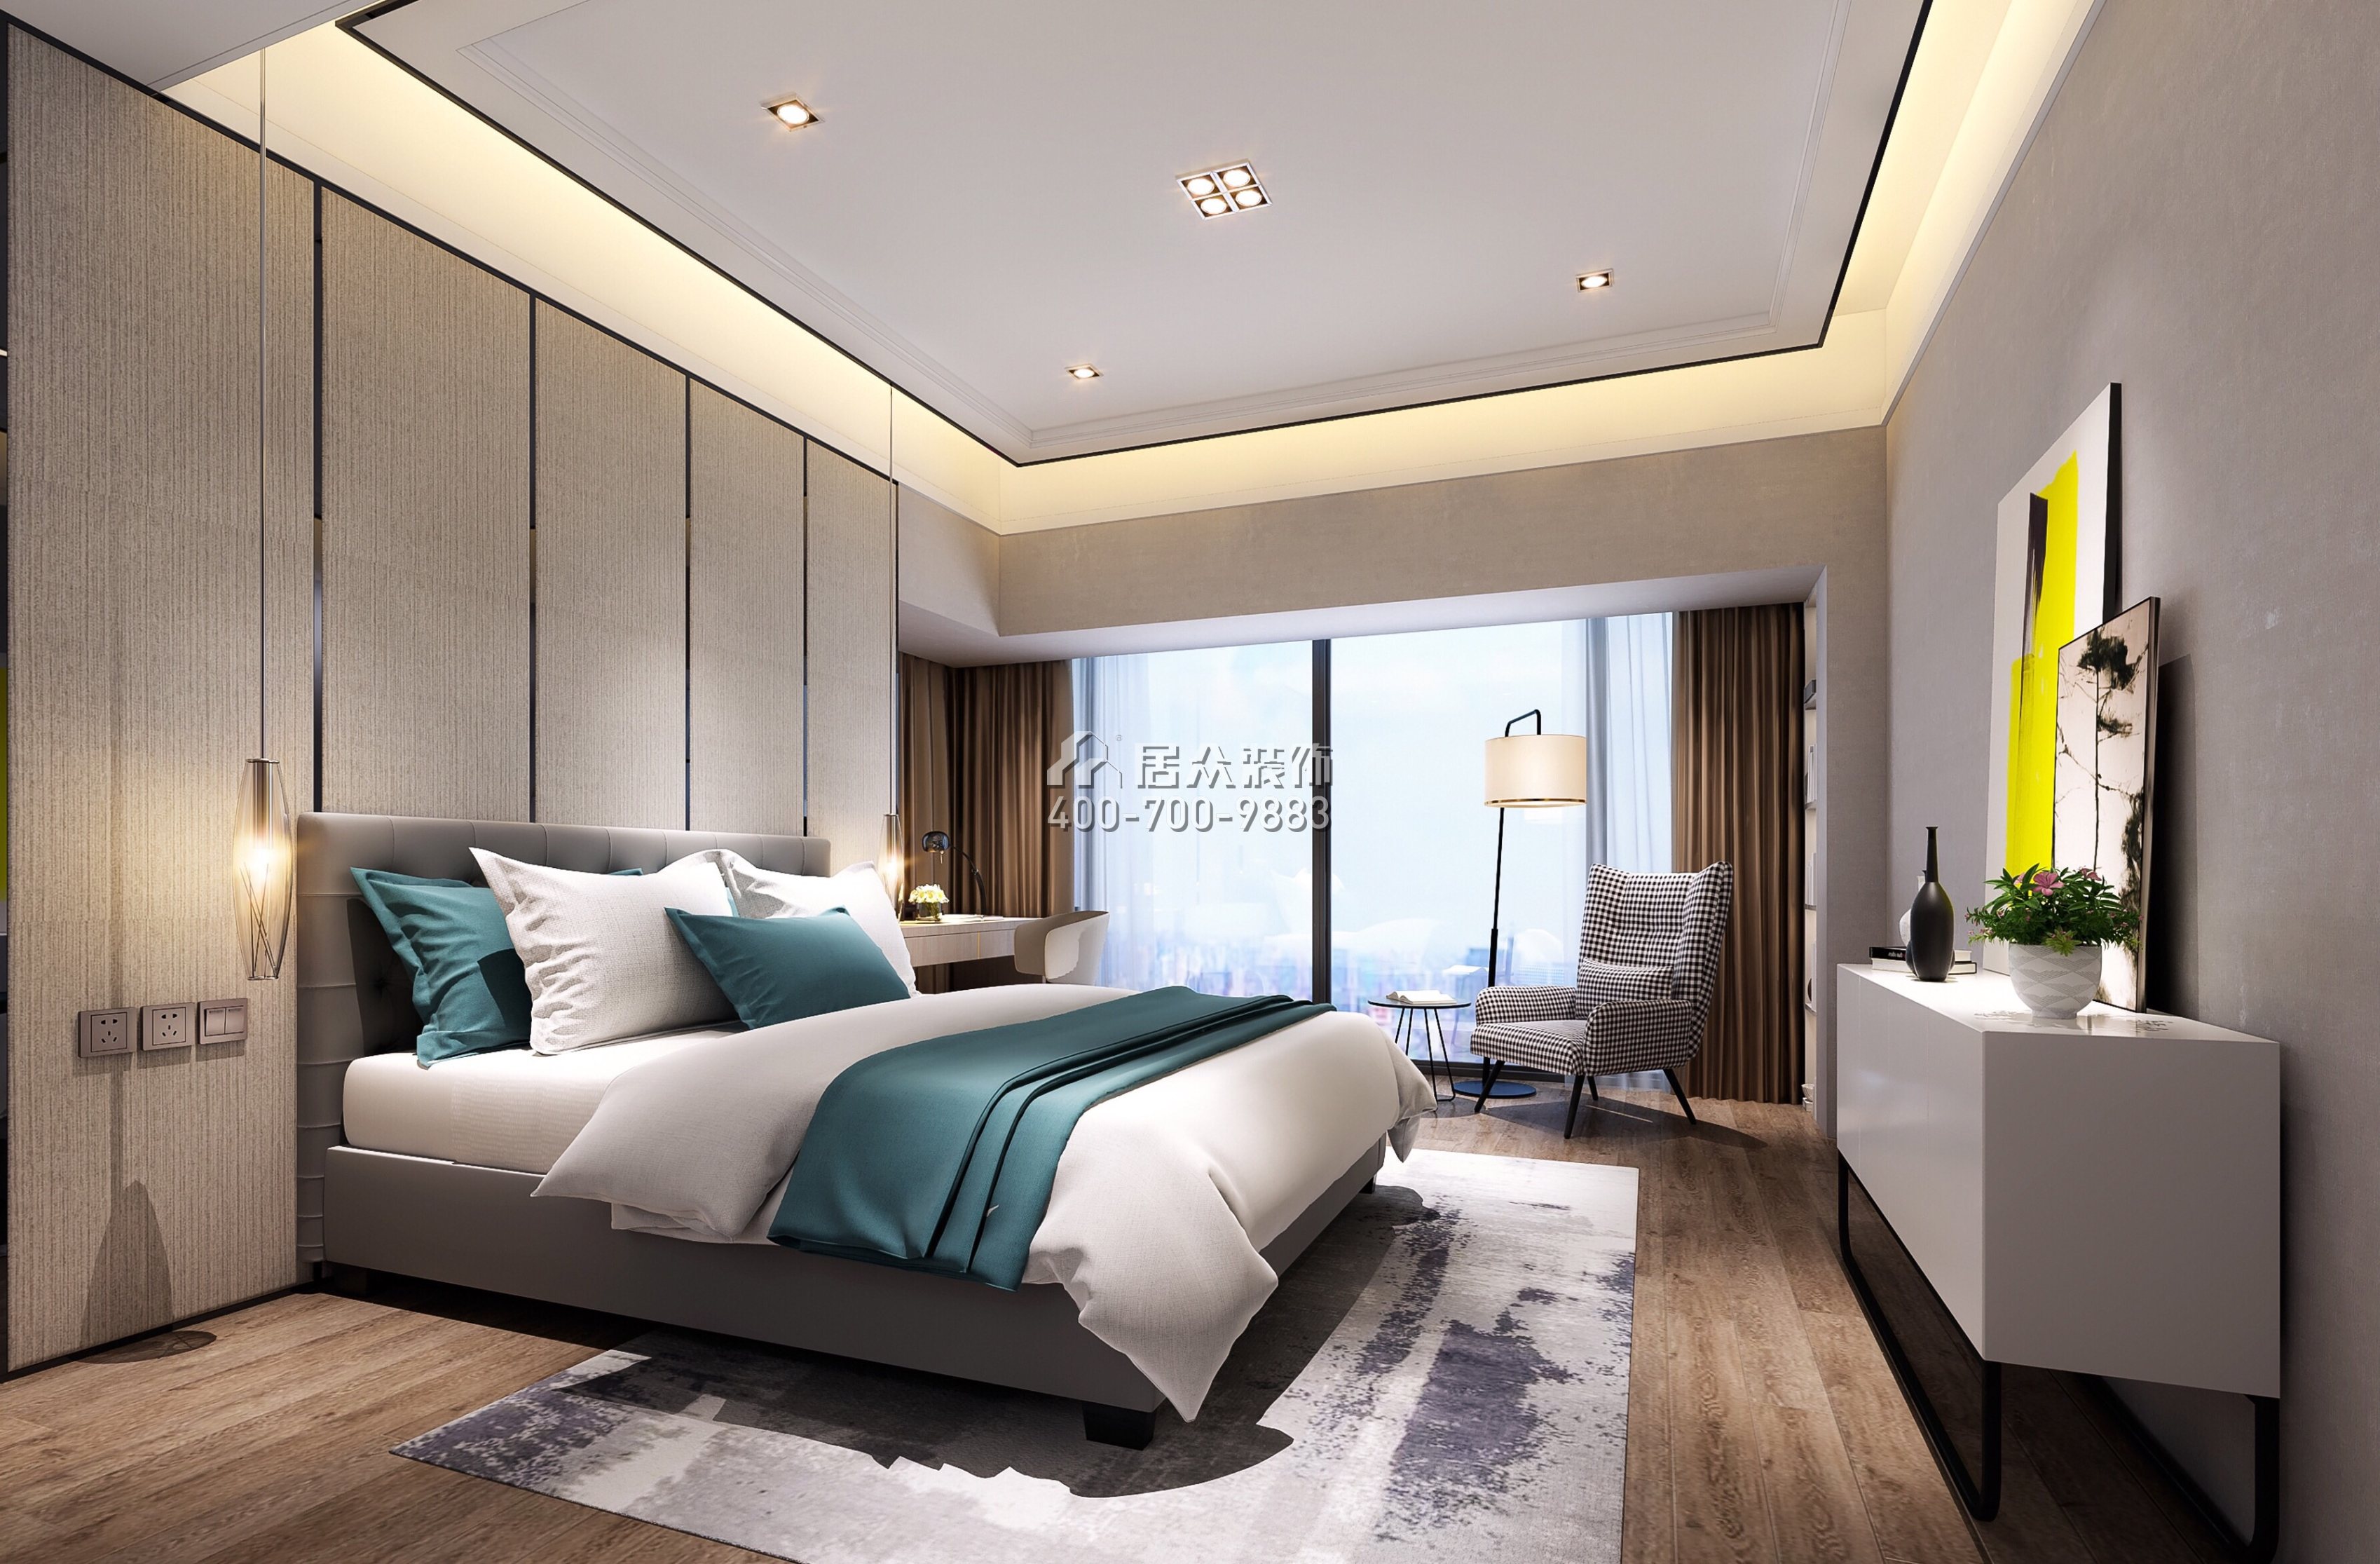 前海丹华园110平方米现代简约风格平层户型卧室装修效果图